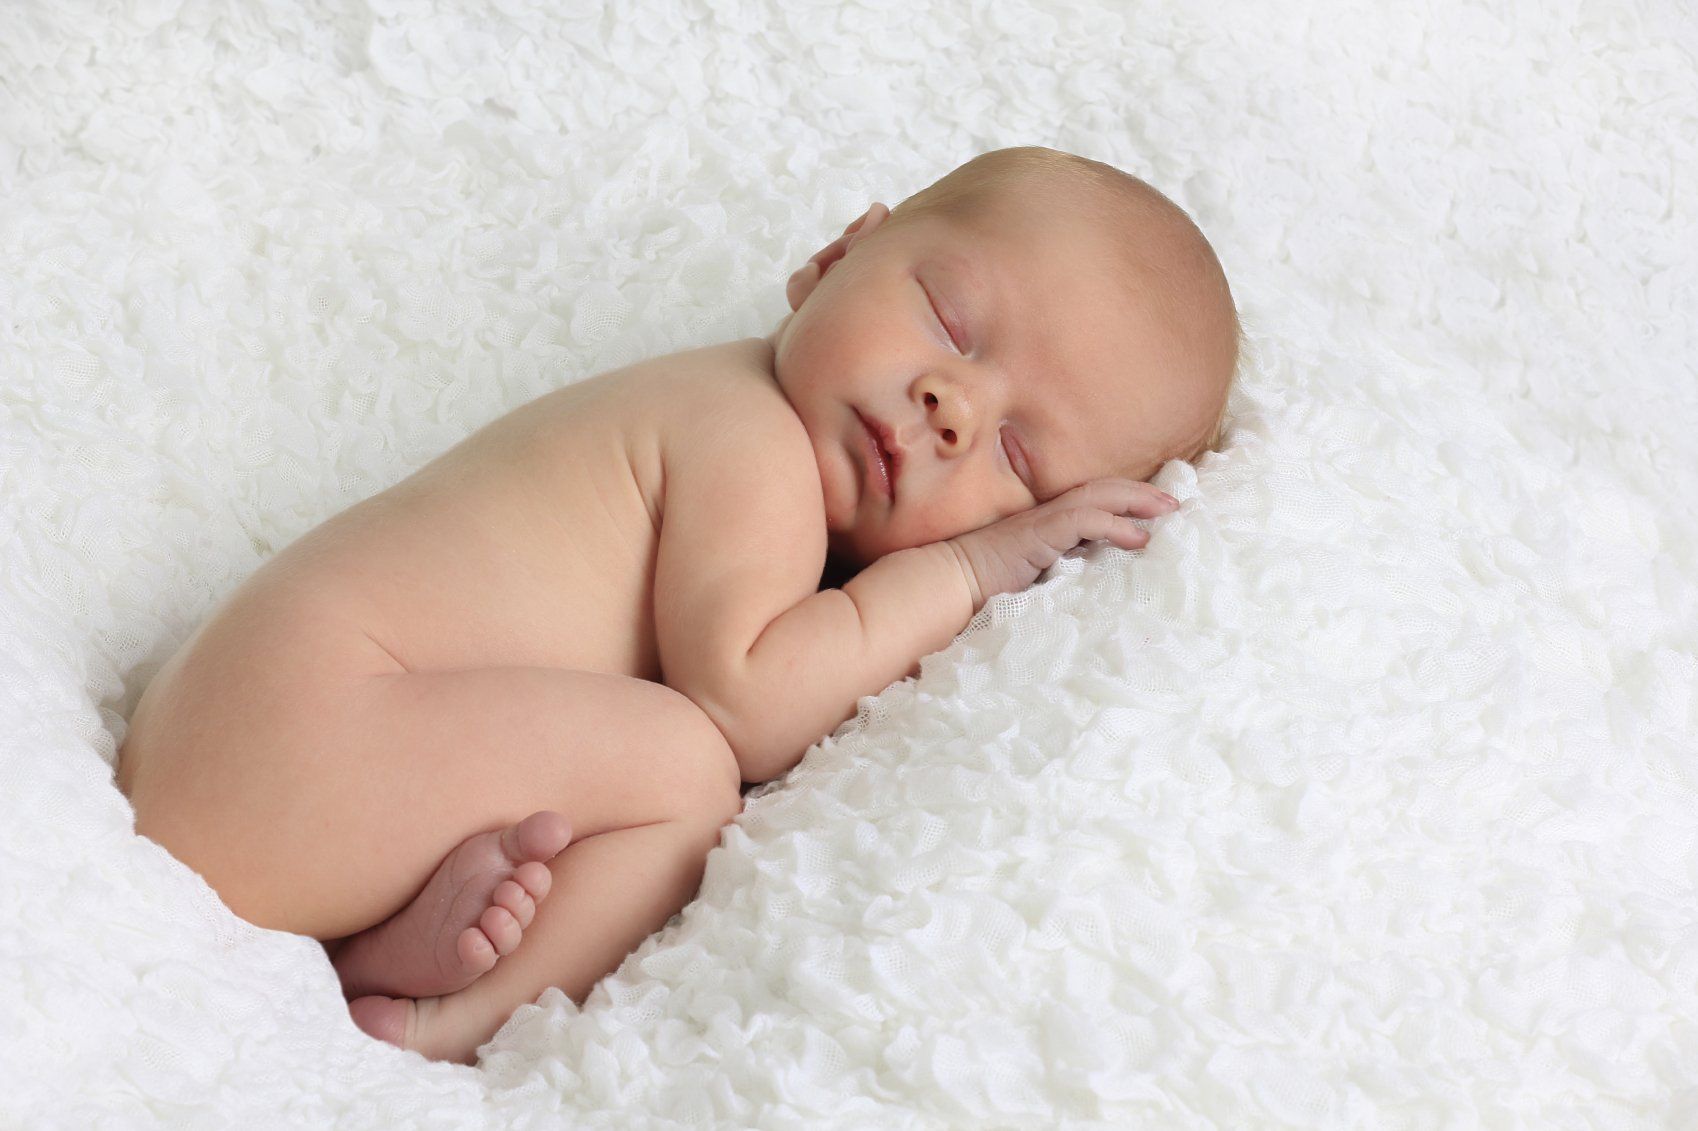 Baby kuschelt sich in eine weiße flauschige Decke